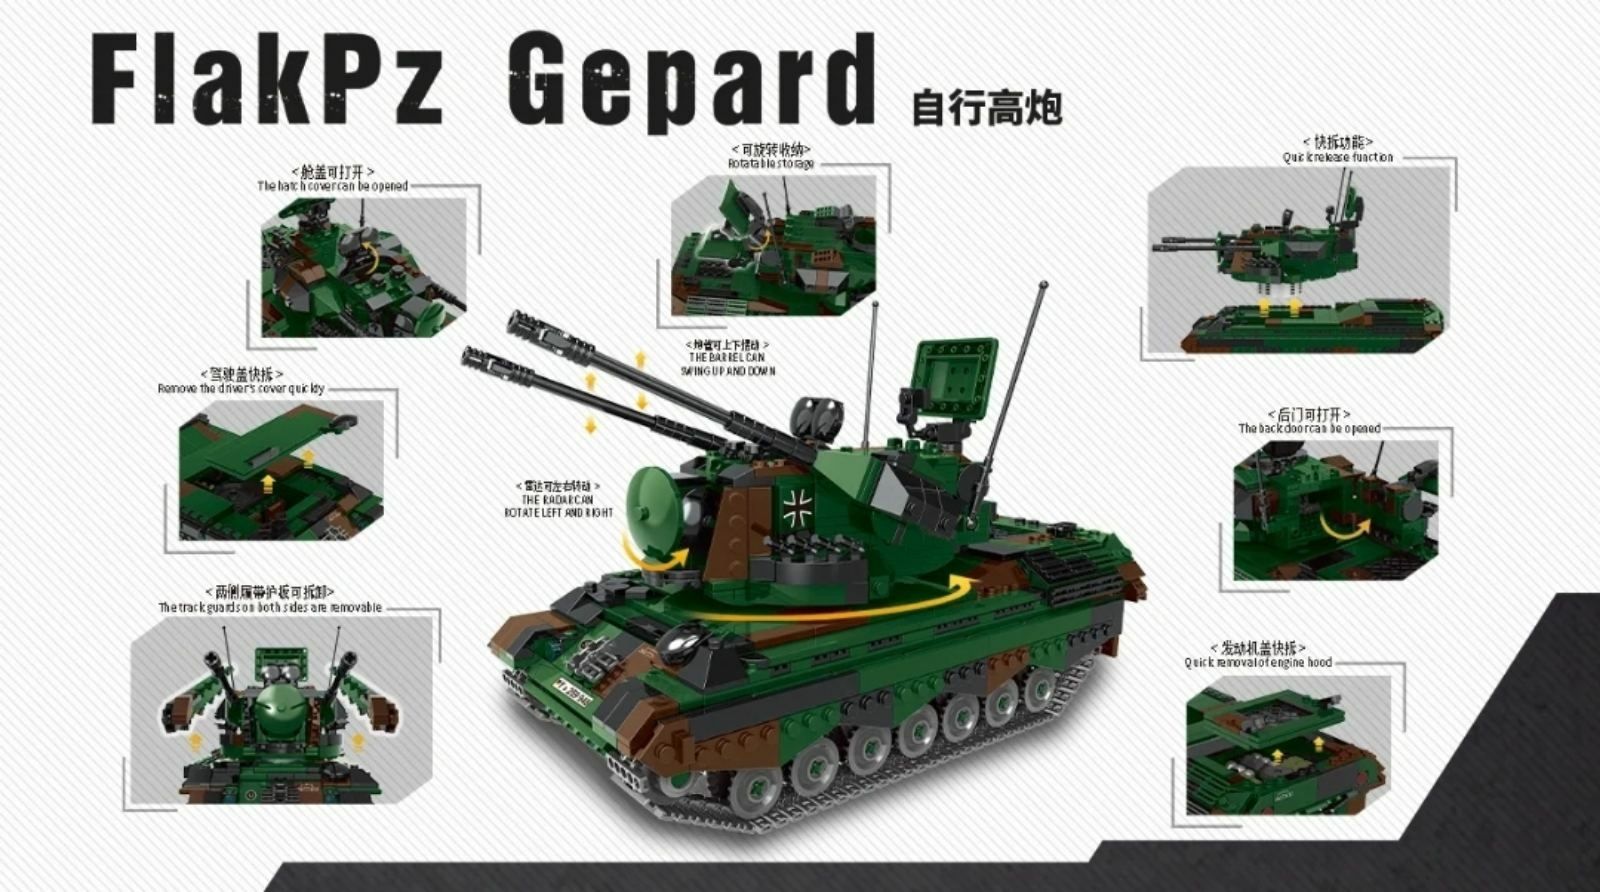 Детский конструктор танк зенитная установка гепард 1352 шт Лего